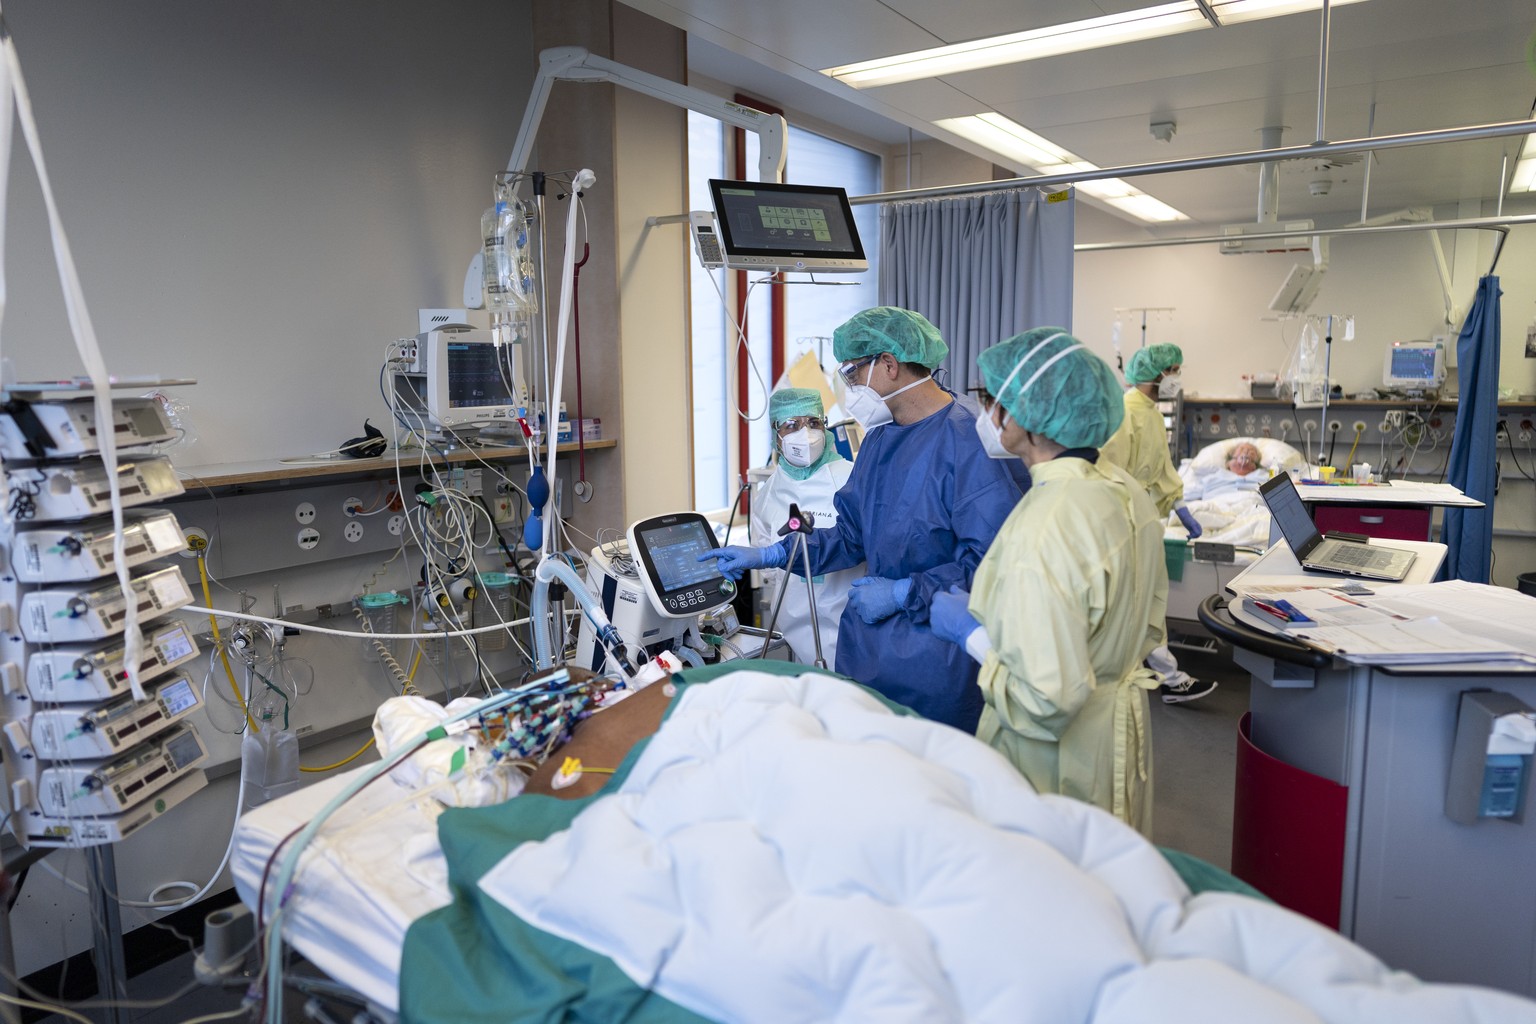 Aerzte und Pflegende kuemmern sich um Covid-Patienten auf der Covid-19-Intensivabteilung im Stadtspital Triemli am 10. Dezember 2020 in Zuerich. (KEYSTONE/Gaetan Bally)